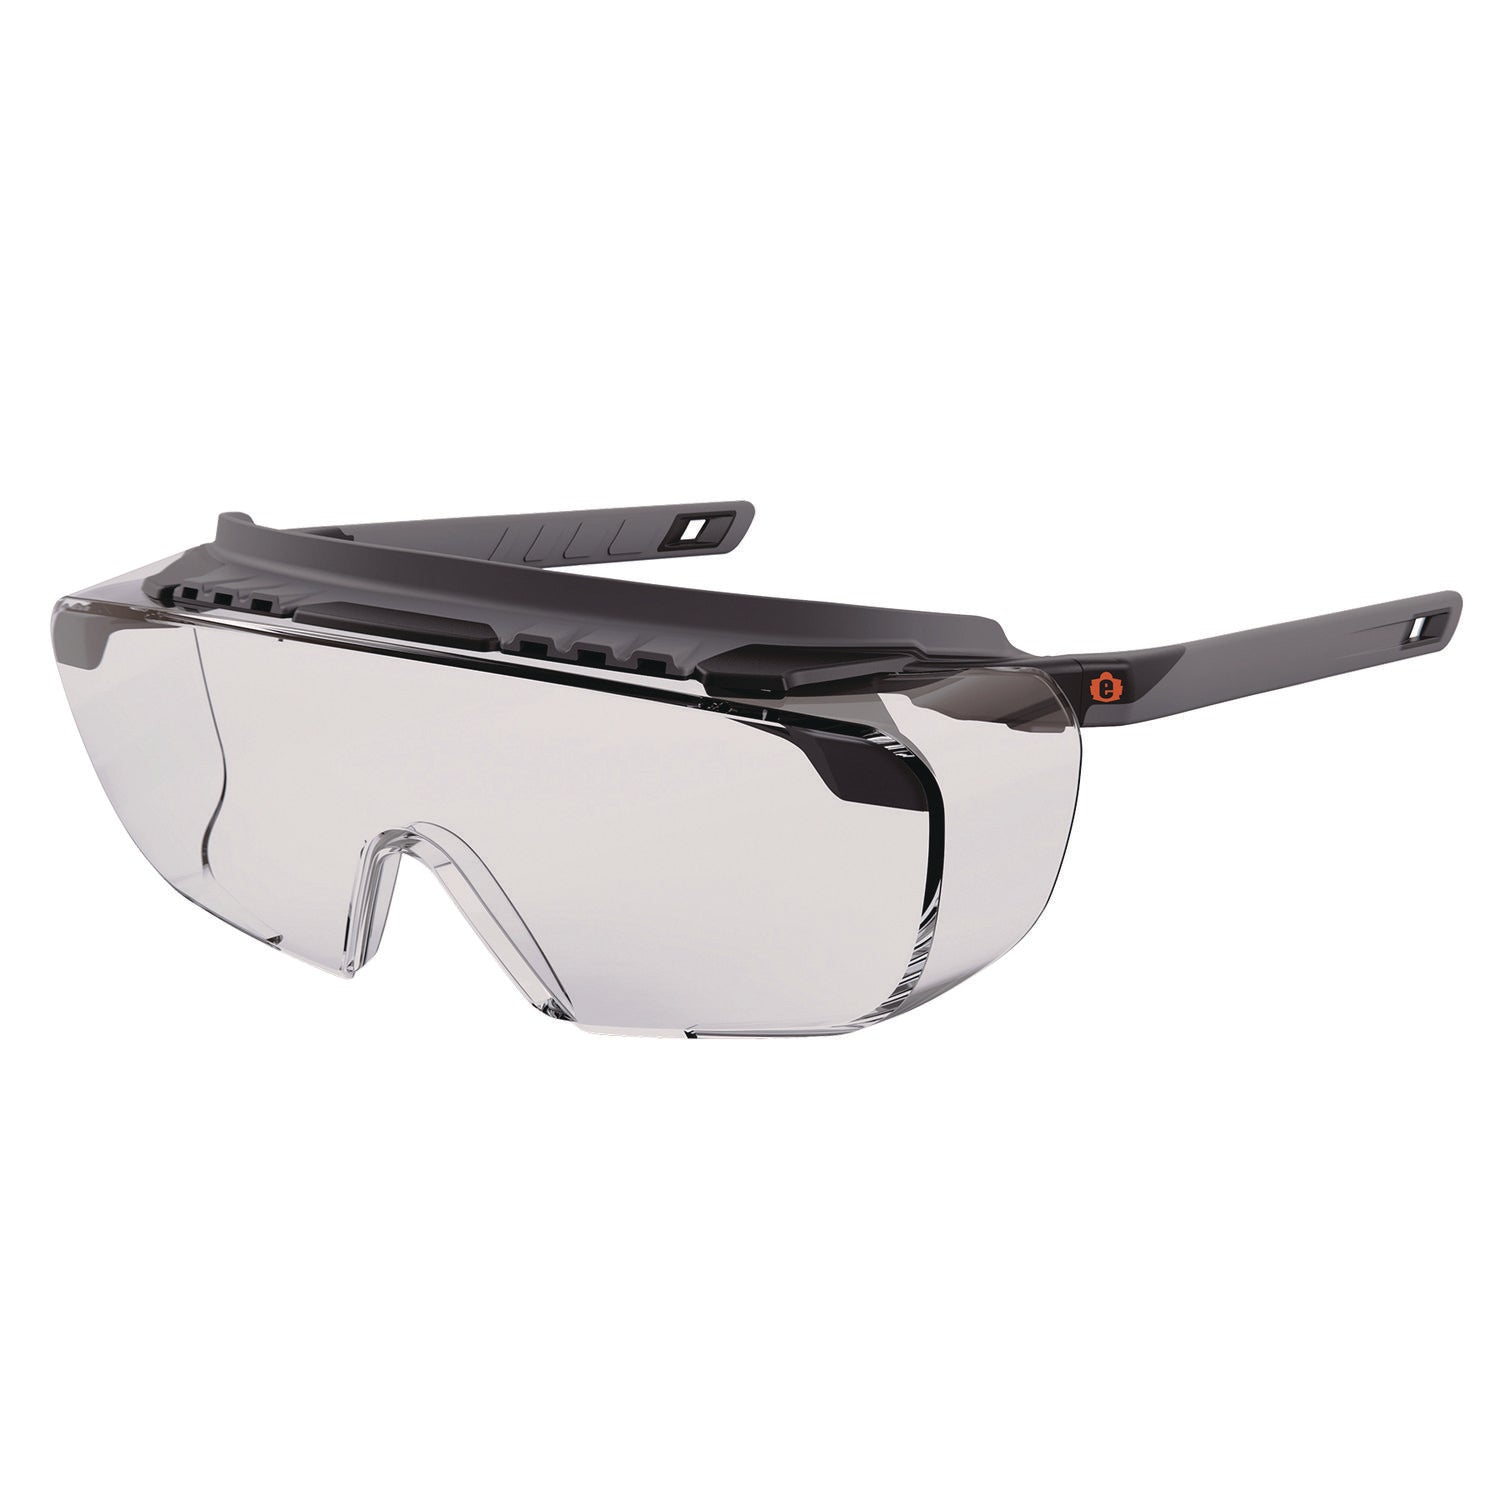 skullerz-osmin-safety-glasses-matte-black-polycarbonate-frame-clear-polycarbonate-lens-ships-in-1-3-business-days_ego55101 - 1